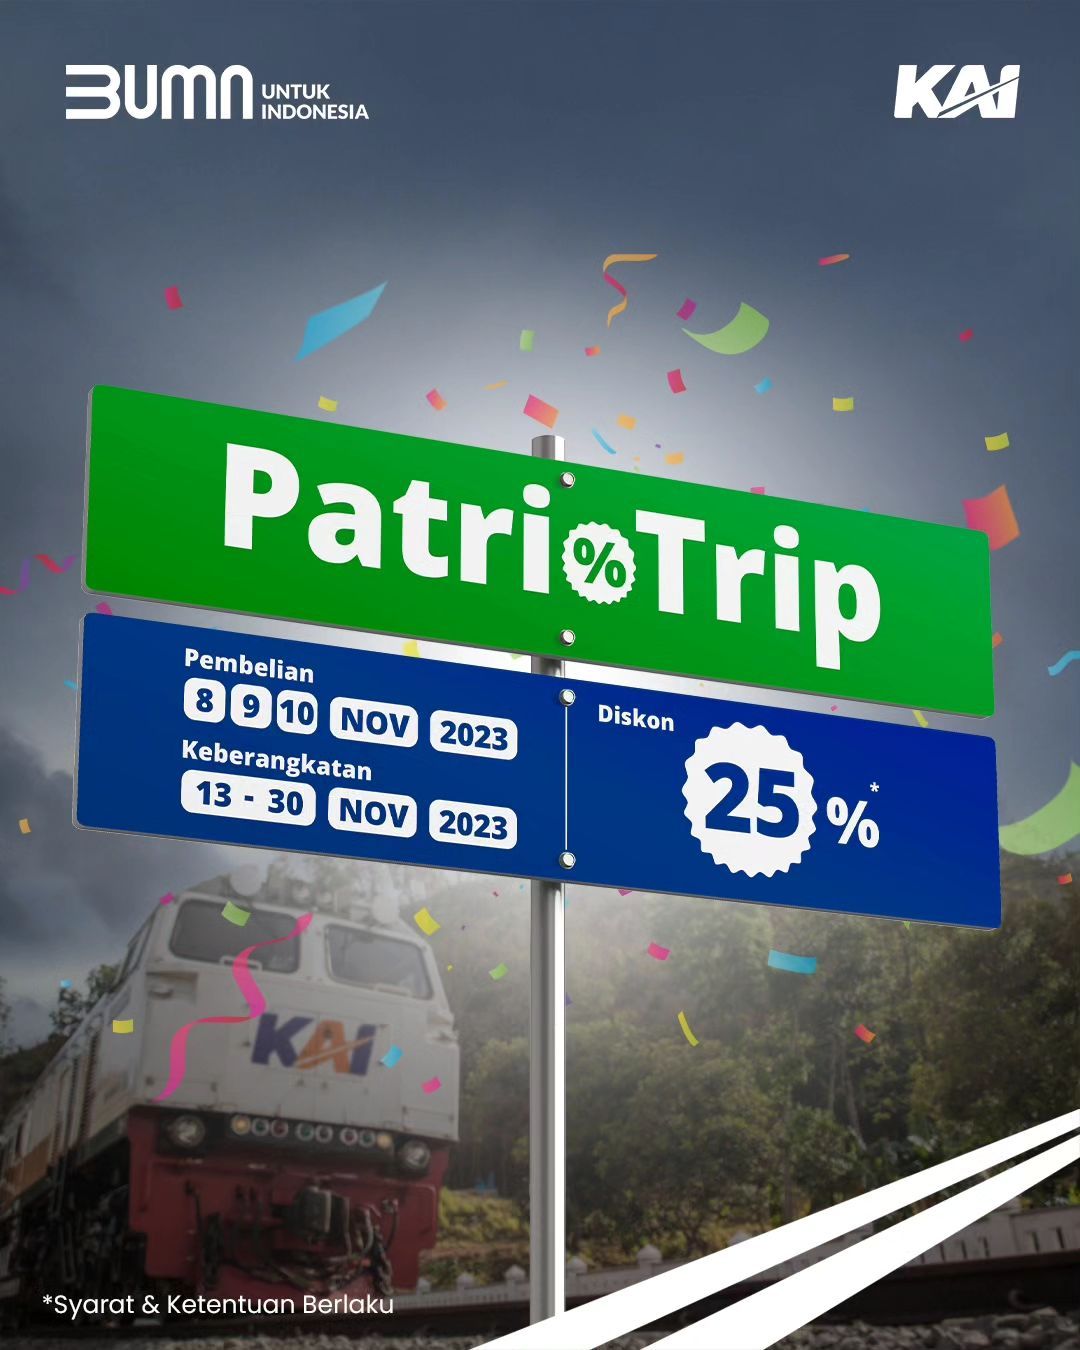 PT KAI menghadirkan promo PatrioTrip dengan potongan harga 25 persen